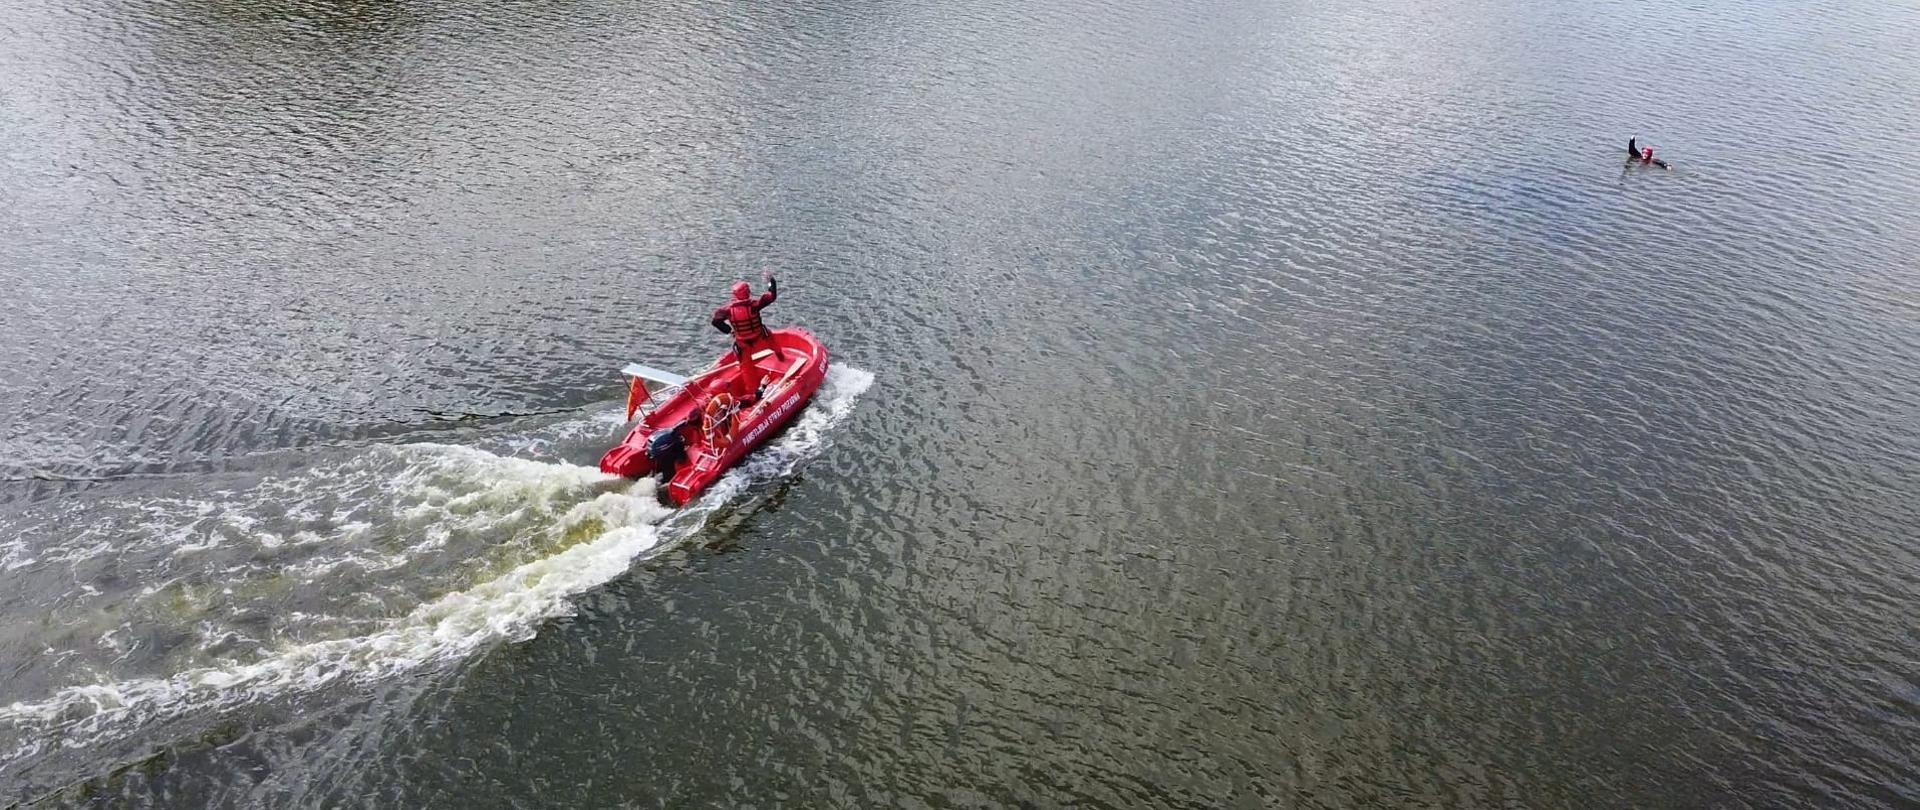 Strażacy łodzią ratowniczą płyną w kierunku osoby poszkodowanej